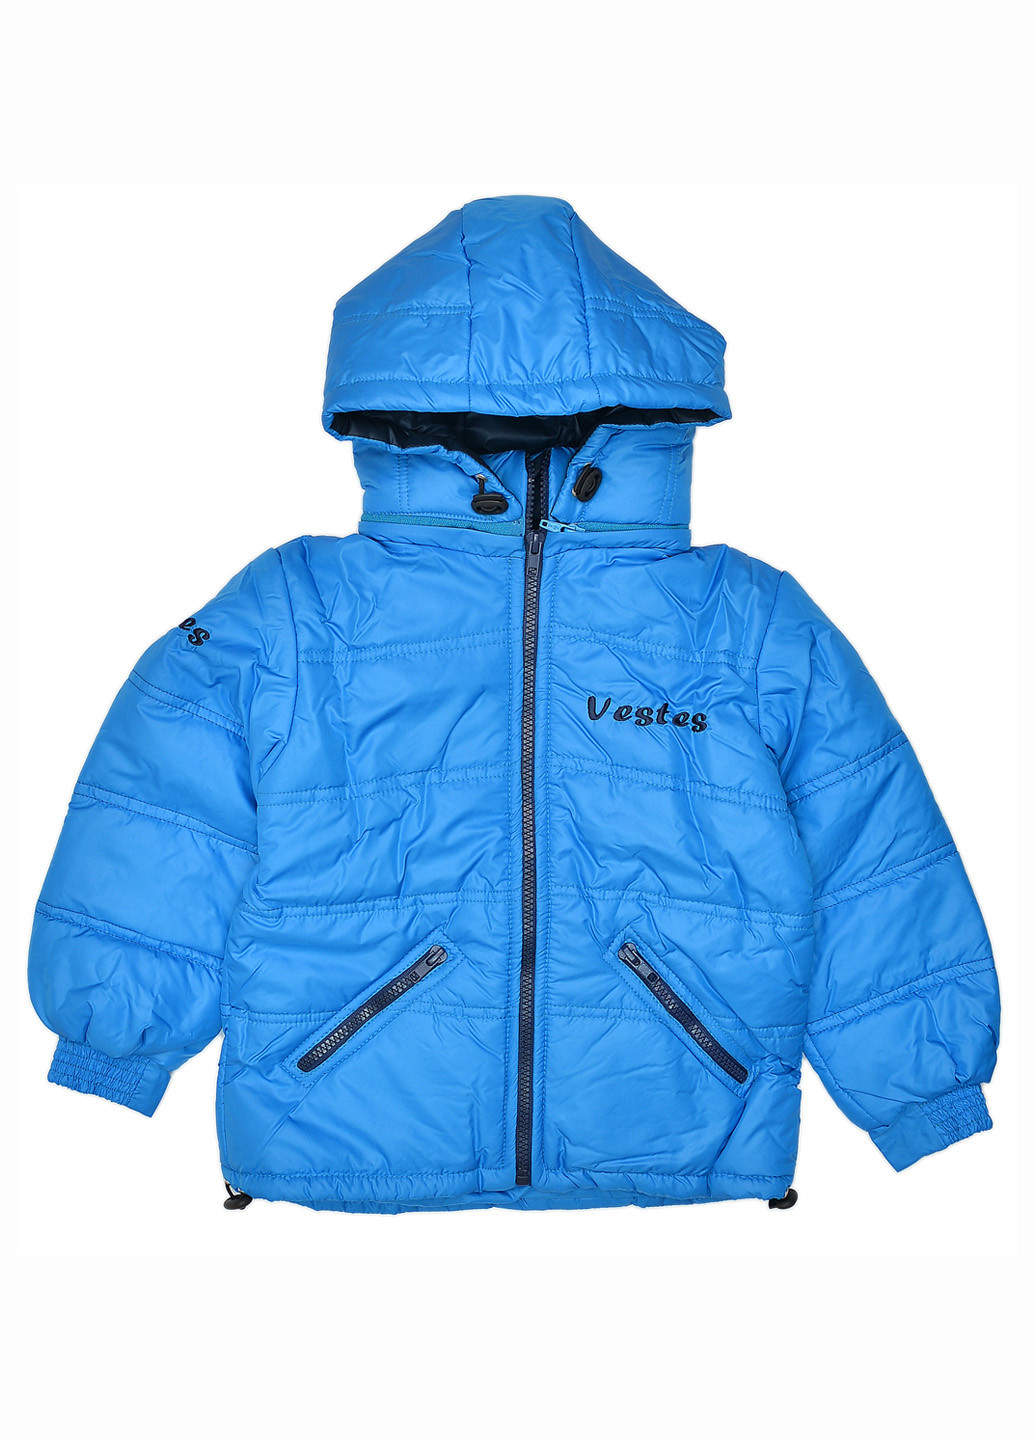 Голубая демисезонная куртка "вестес" Vestes